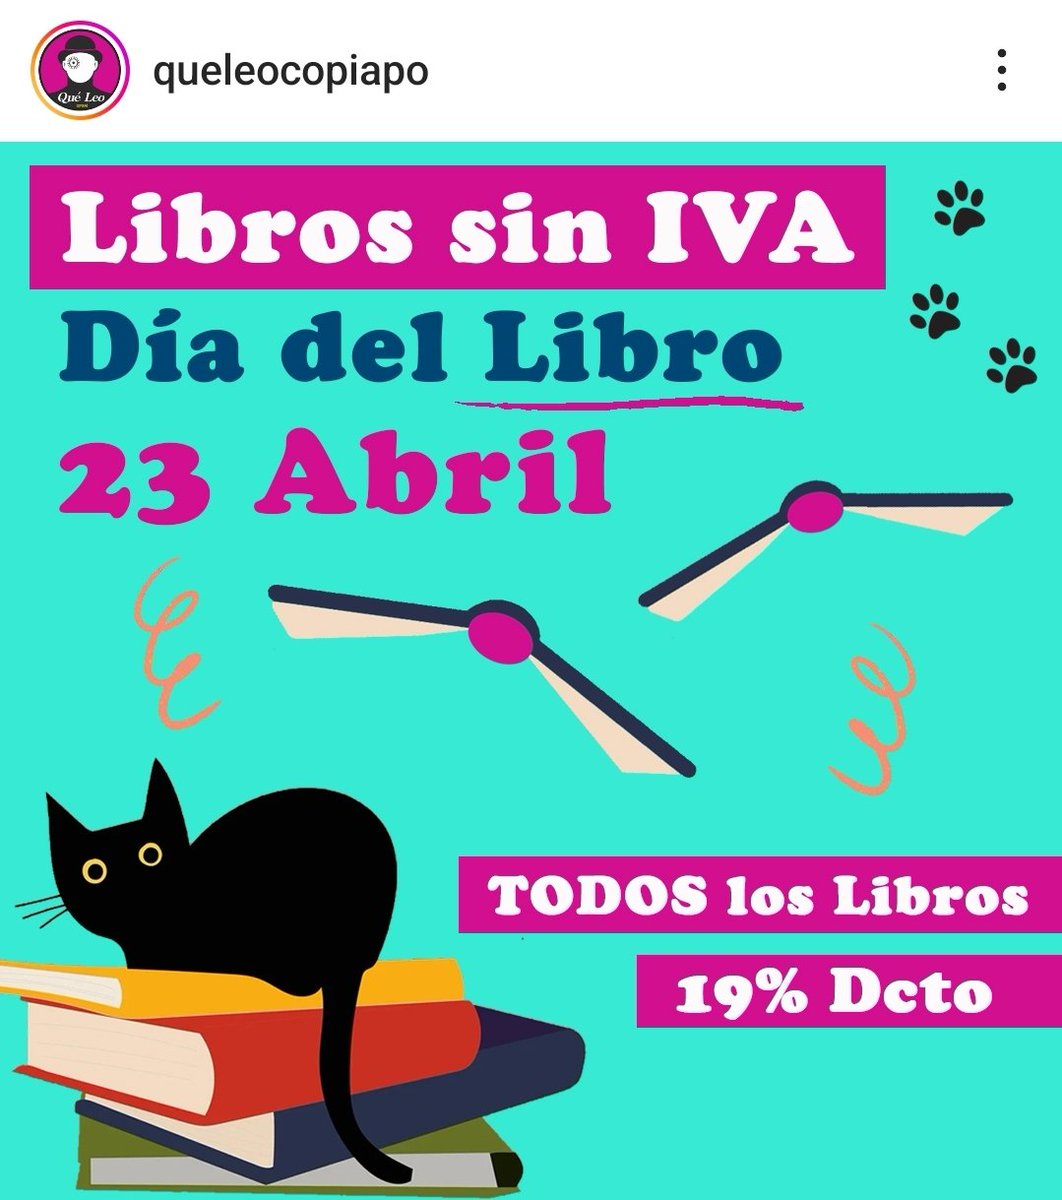 Vayan mañana a celebrar el día del libro a @queleocopiapo 
Libros sin iva 👏
#Copiapó 
#Atacama
#DiaDelLibro 
#MesDelLibro